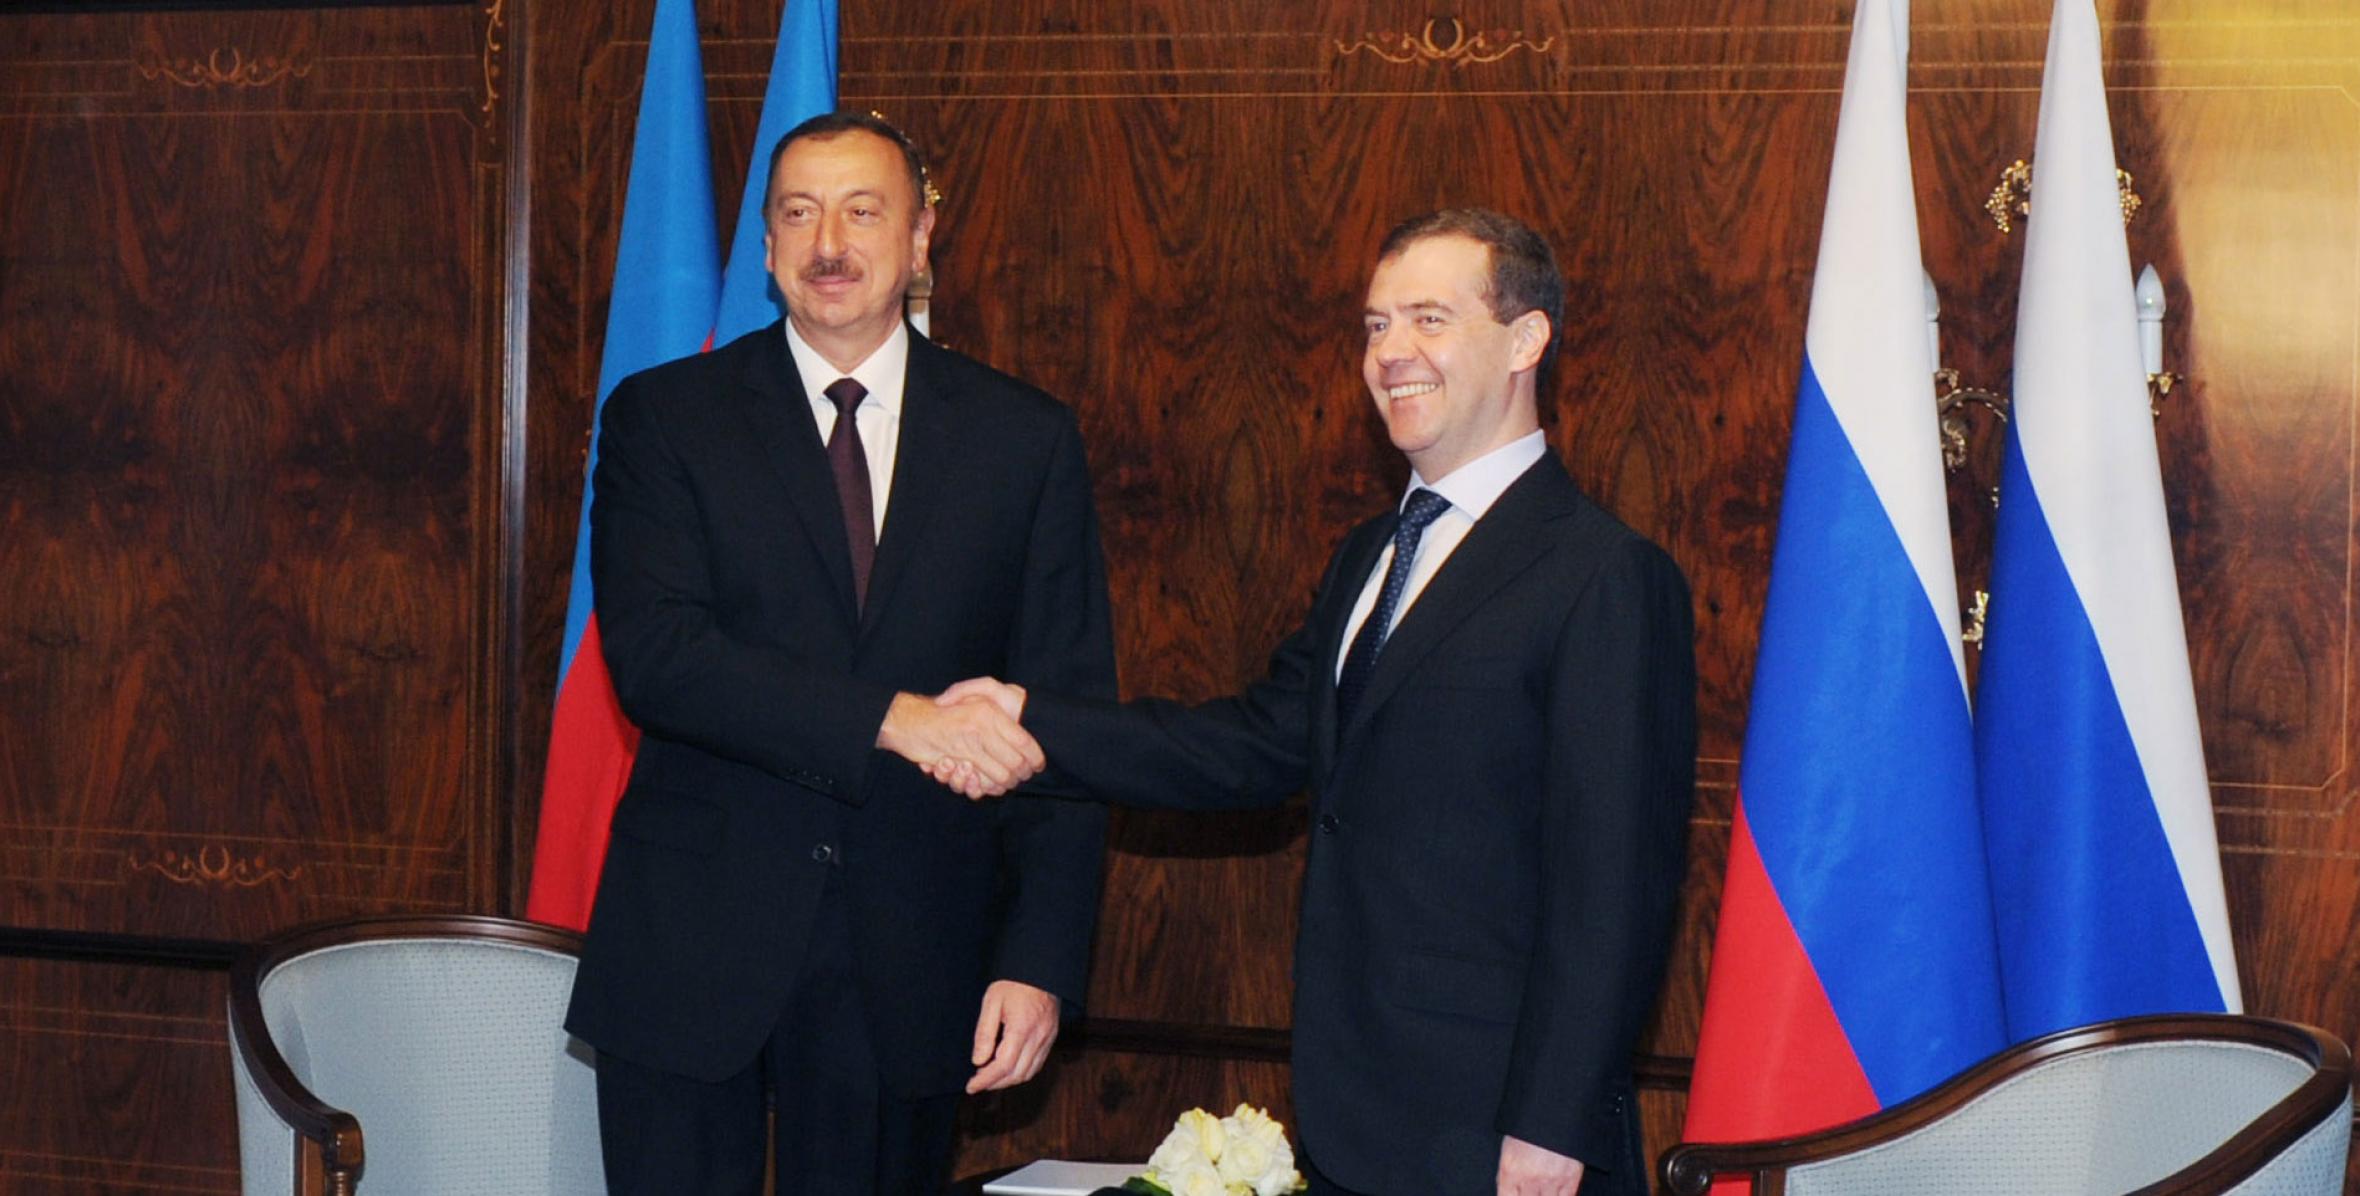 Ilham Aliyev met with Russian President Dmitry Medvedev